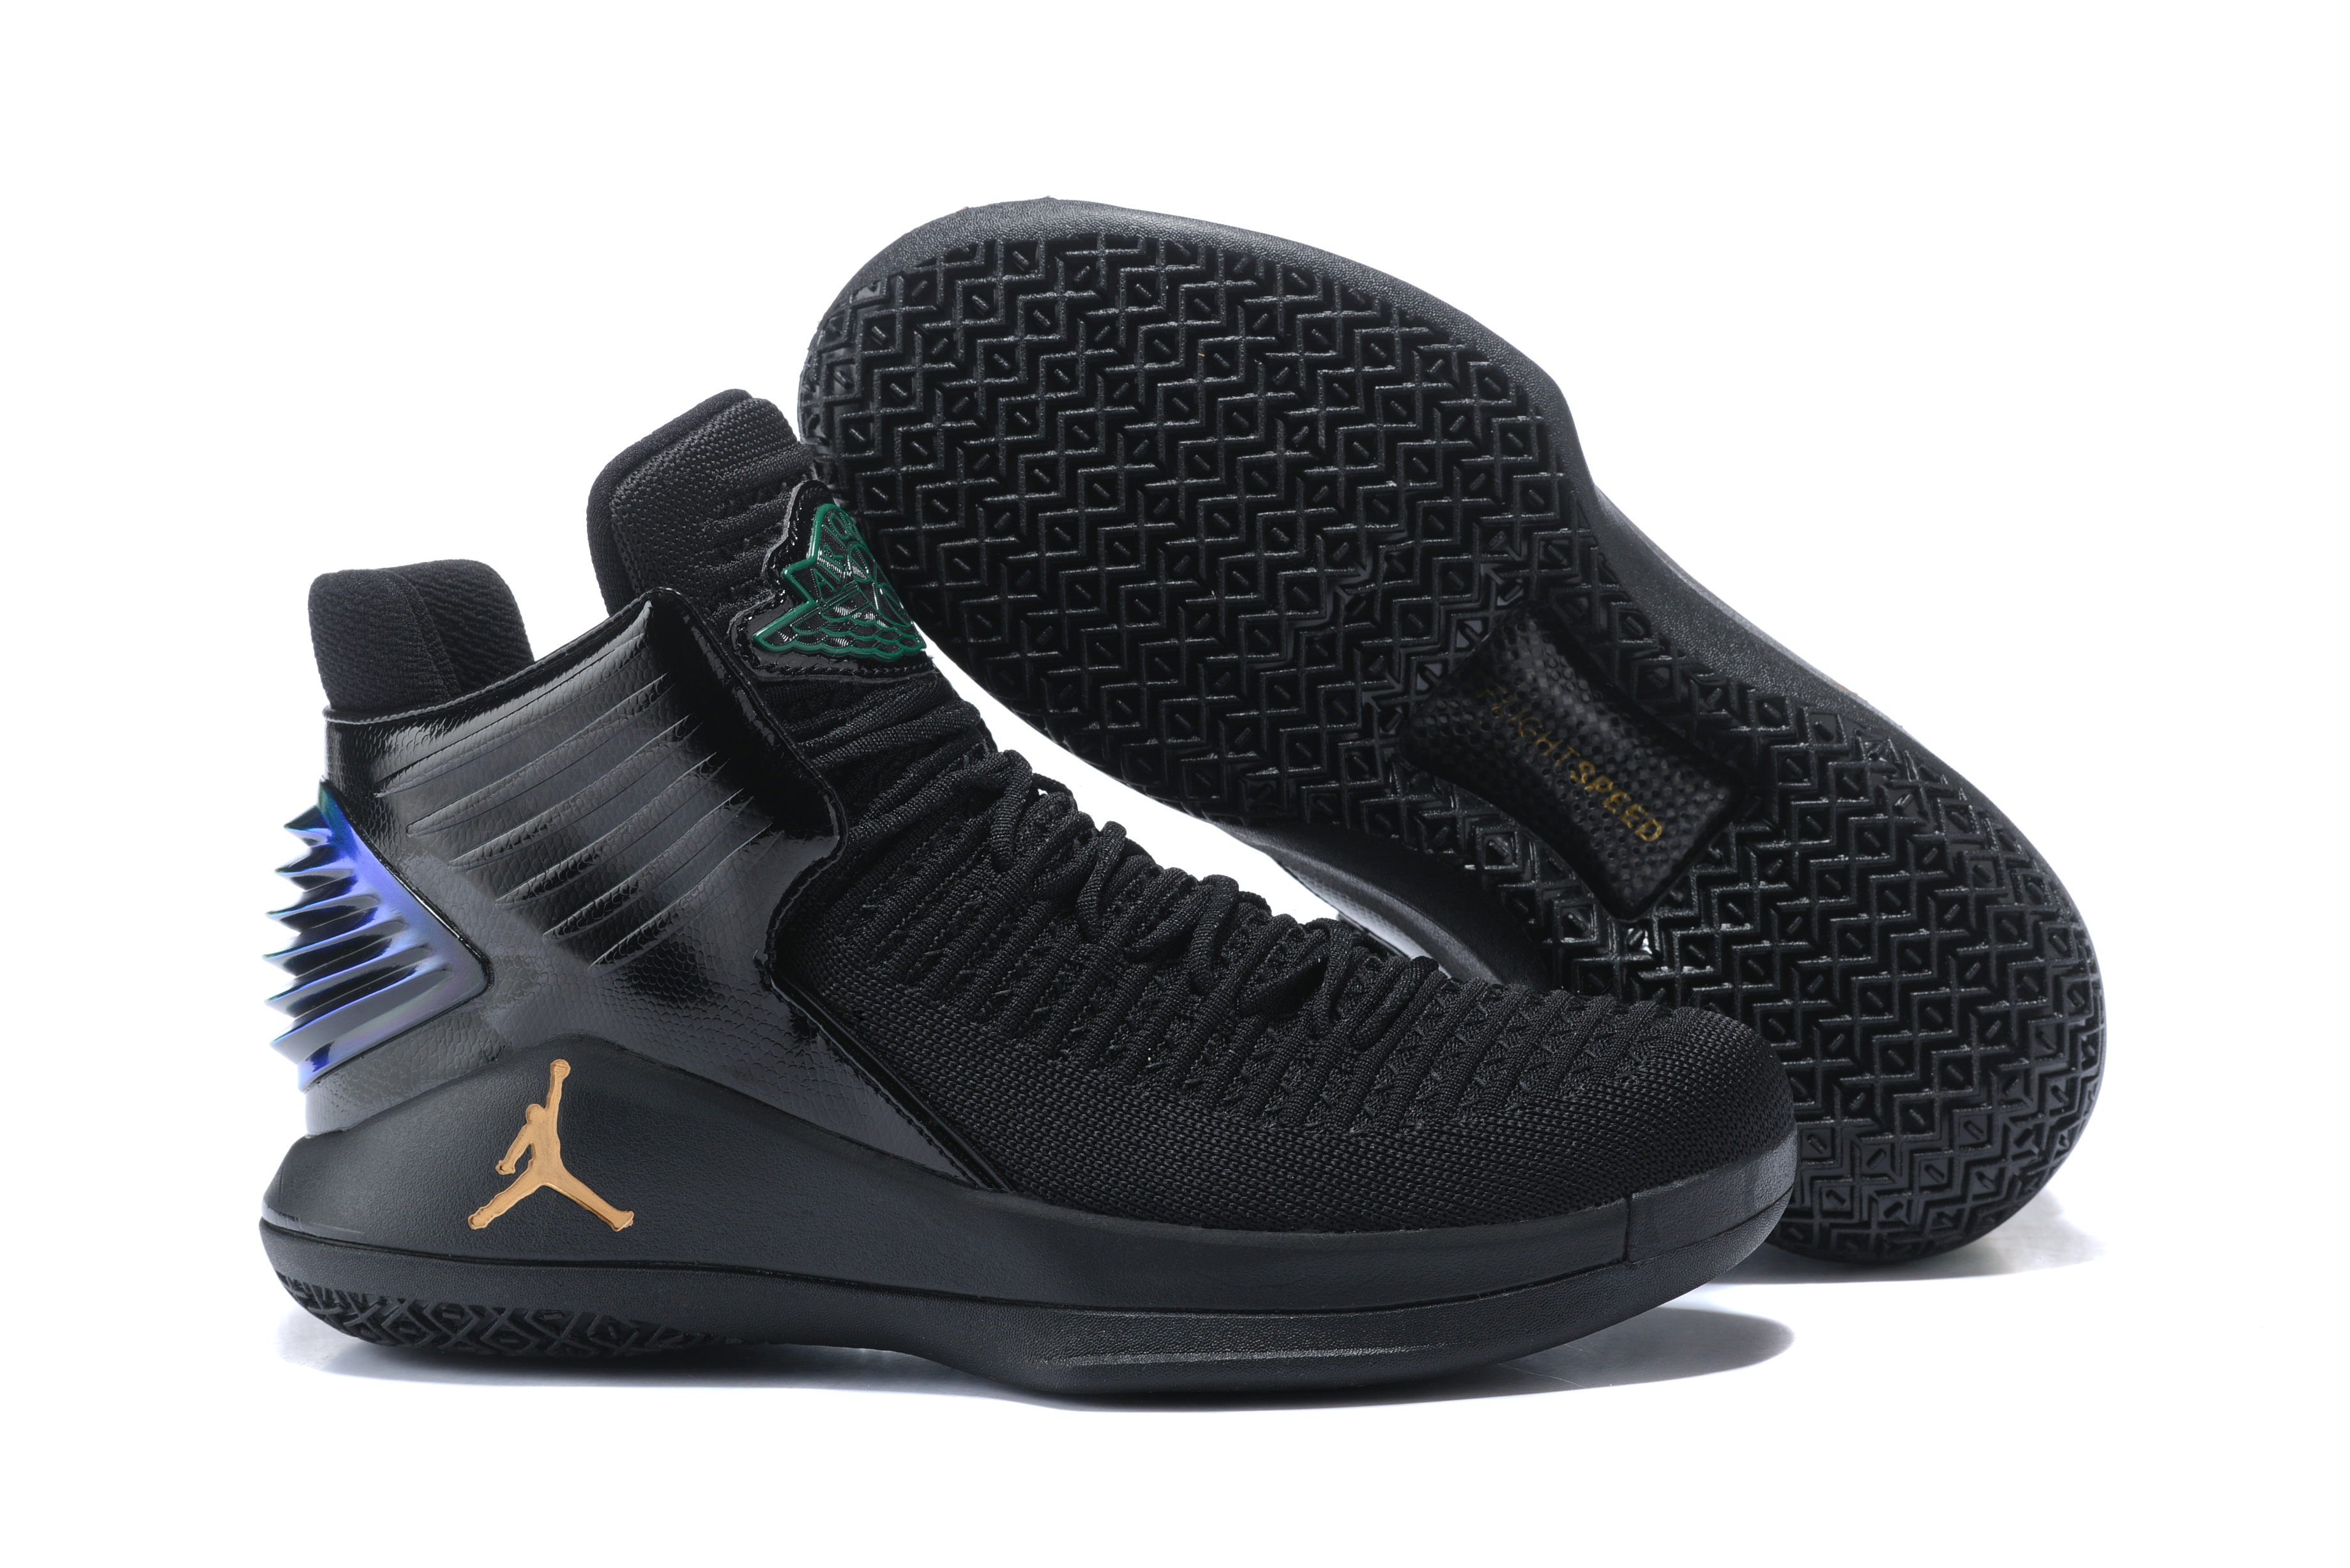 Original Air Jordan 32 Black Shoes